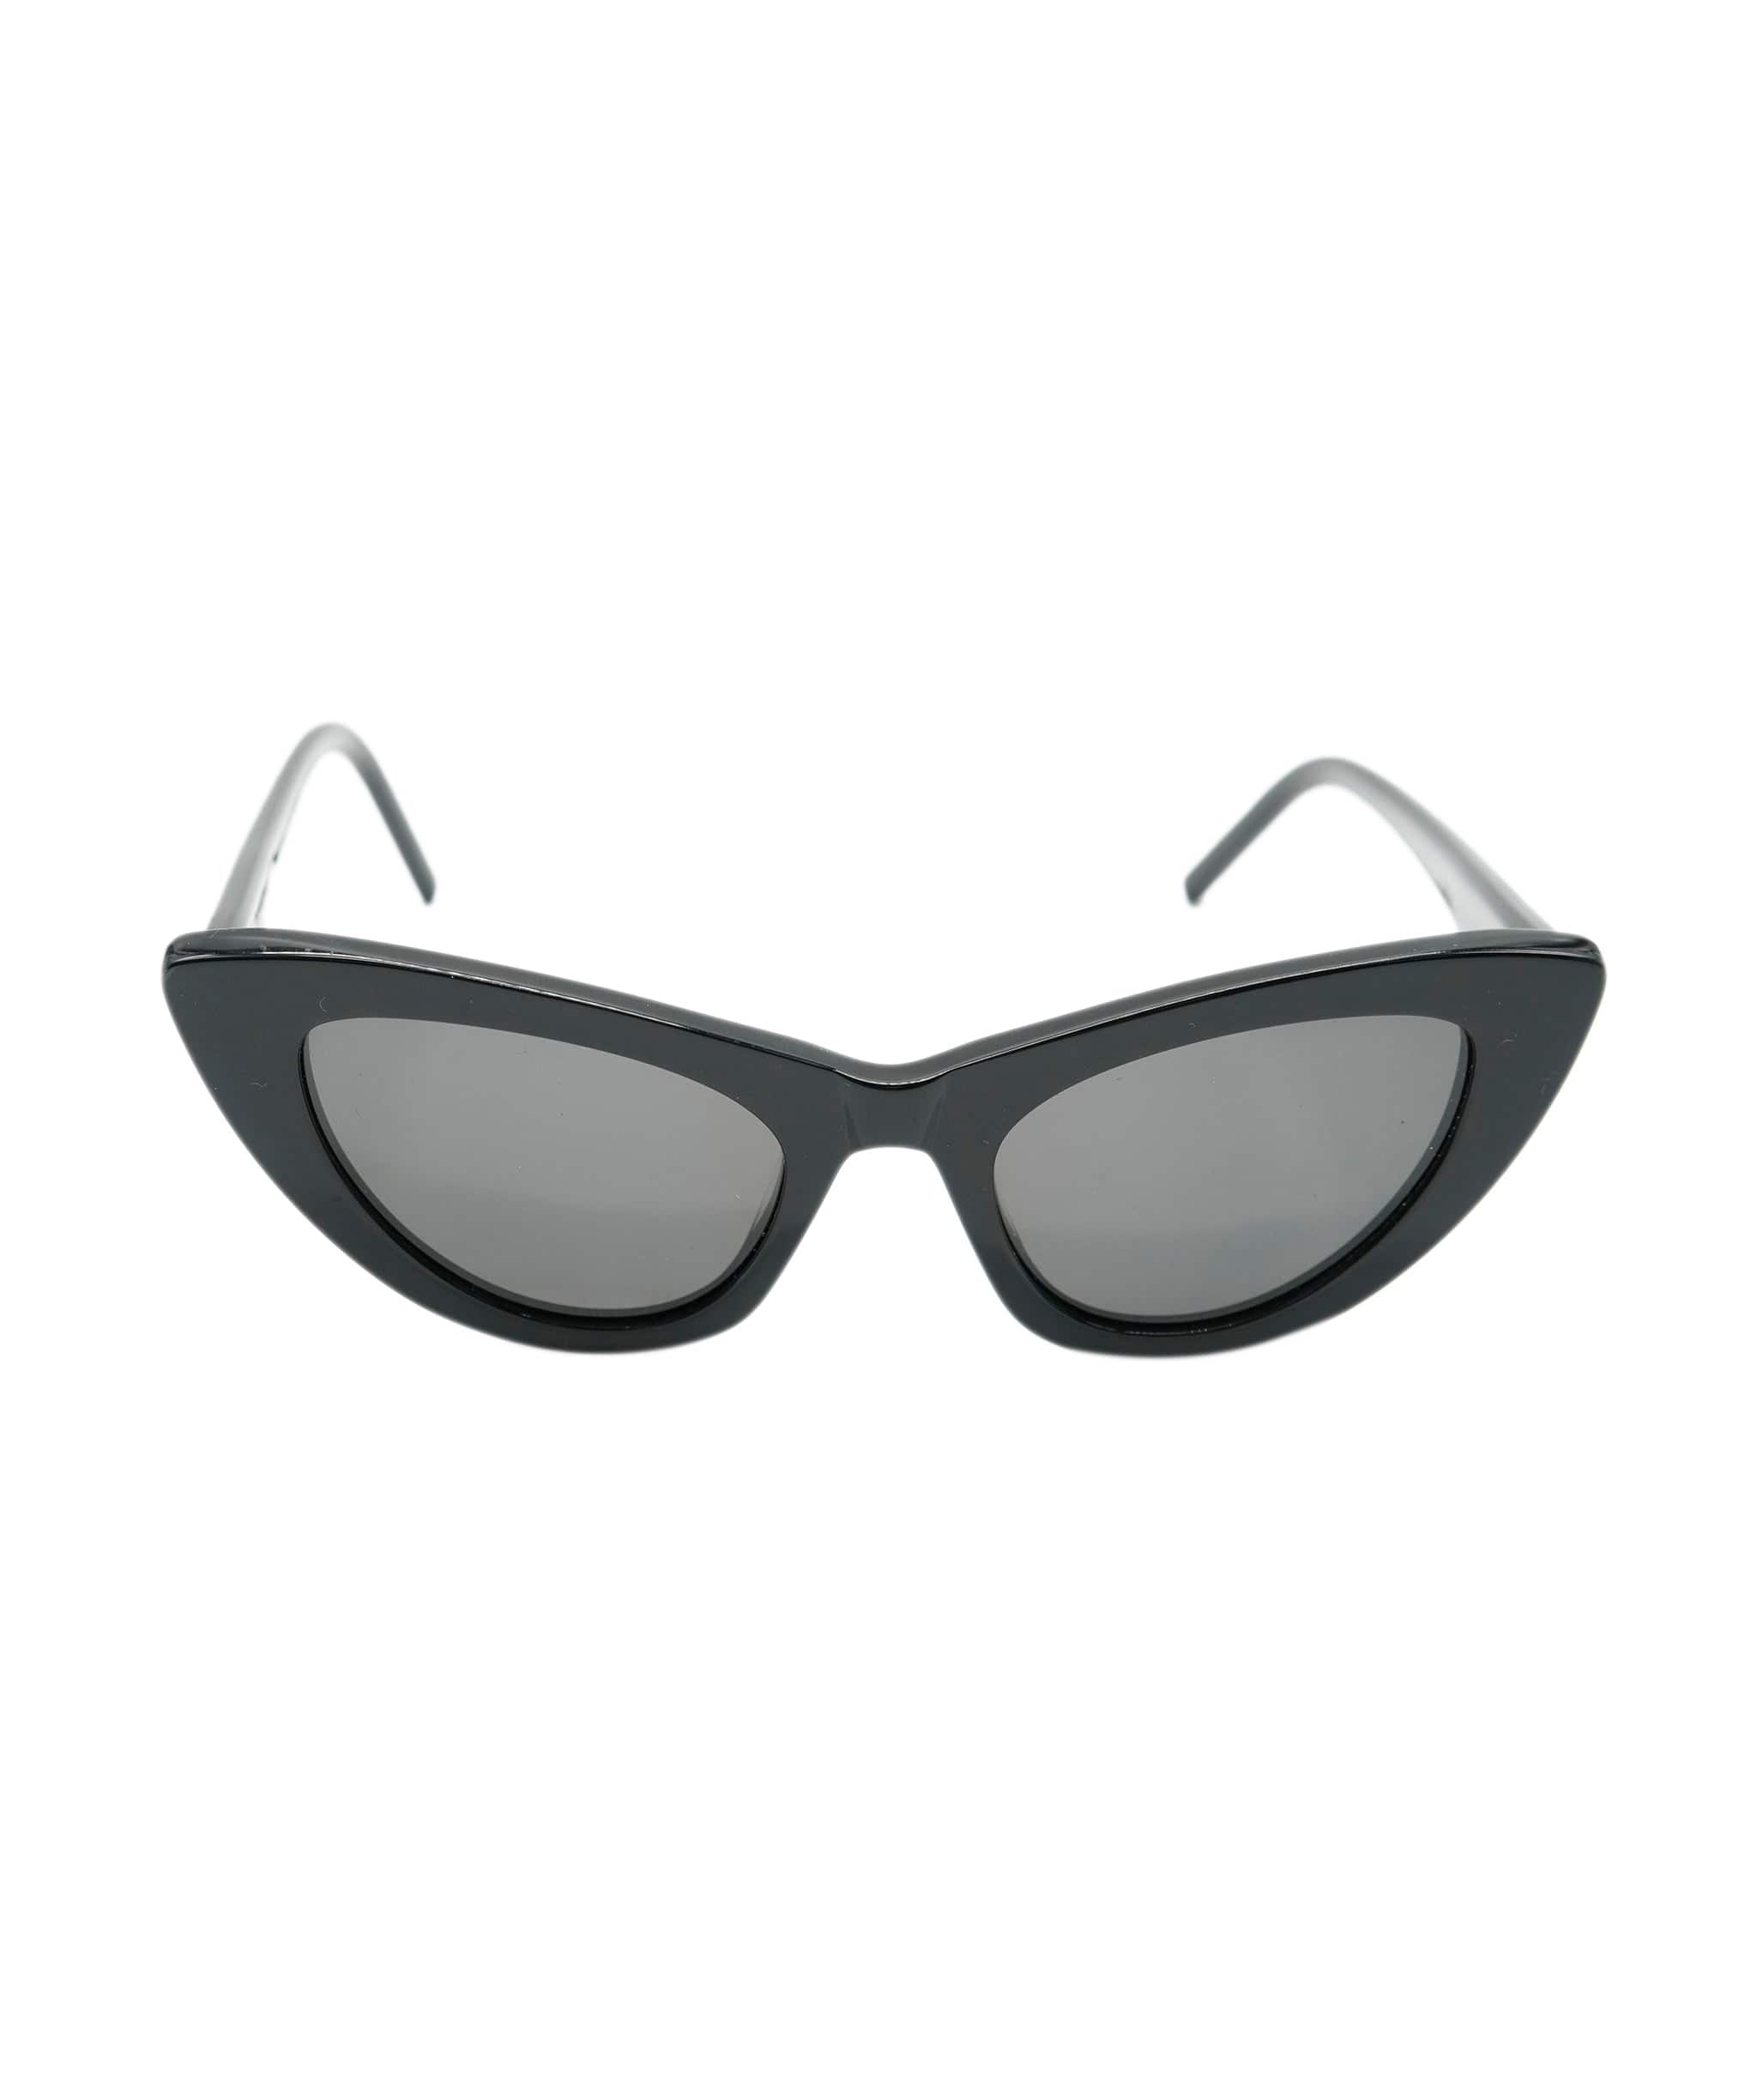 Yves Saint Laurent Saint Laurent Sunglasses RJC2524